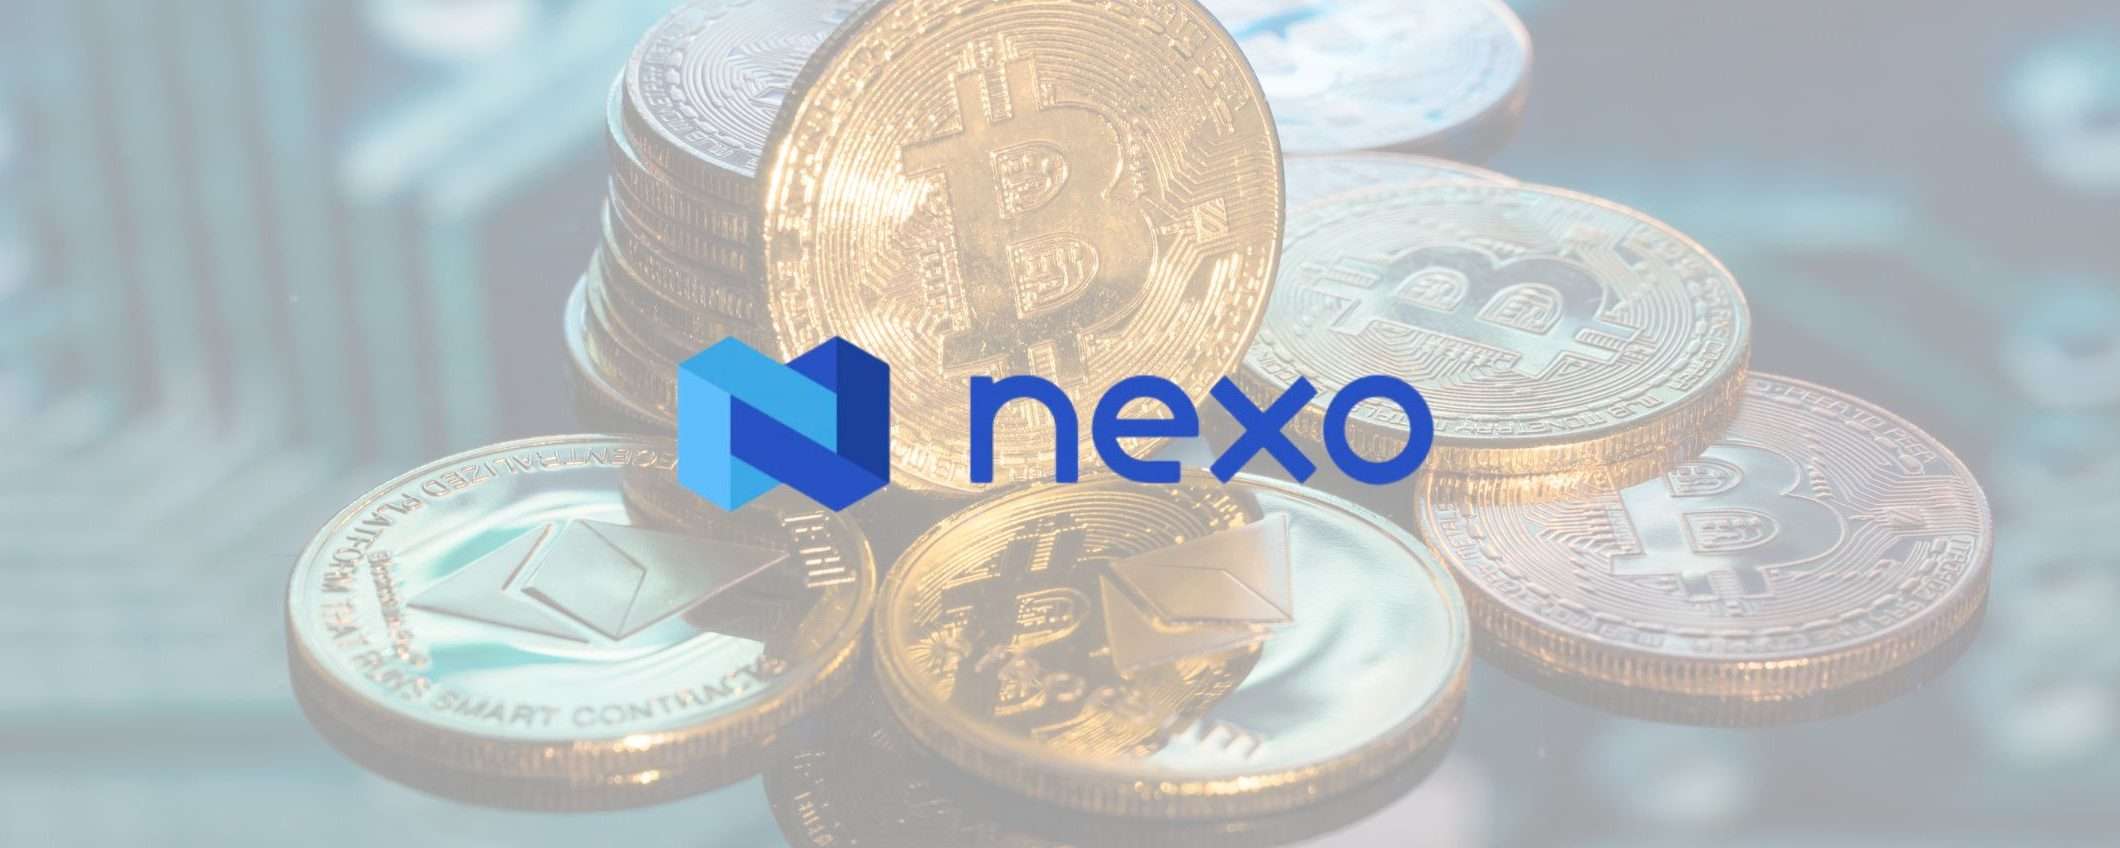 Unisciti a Nexo e guadagna Bitcoin invitando i tuoi amici